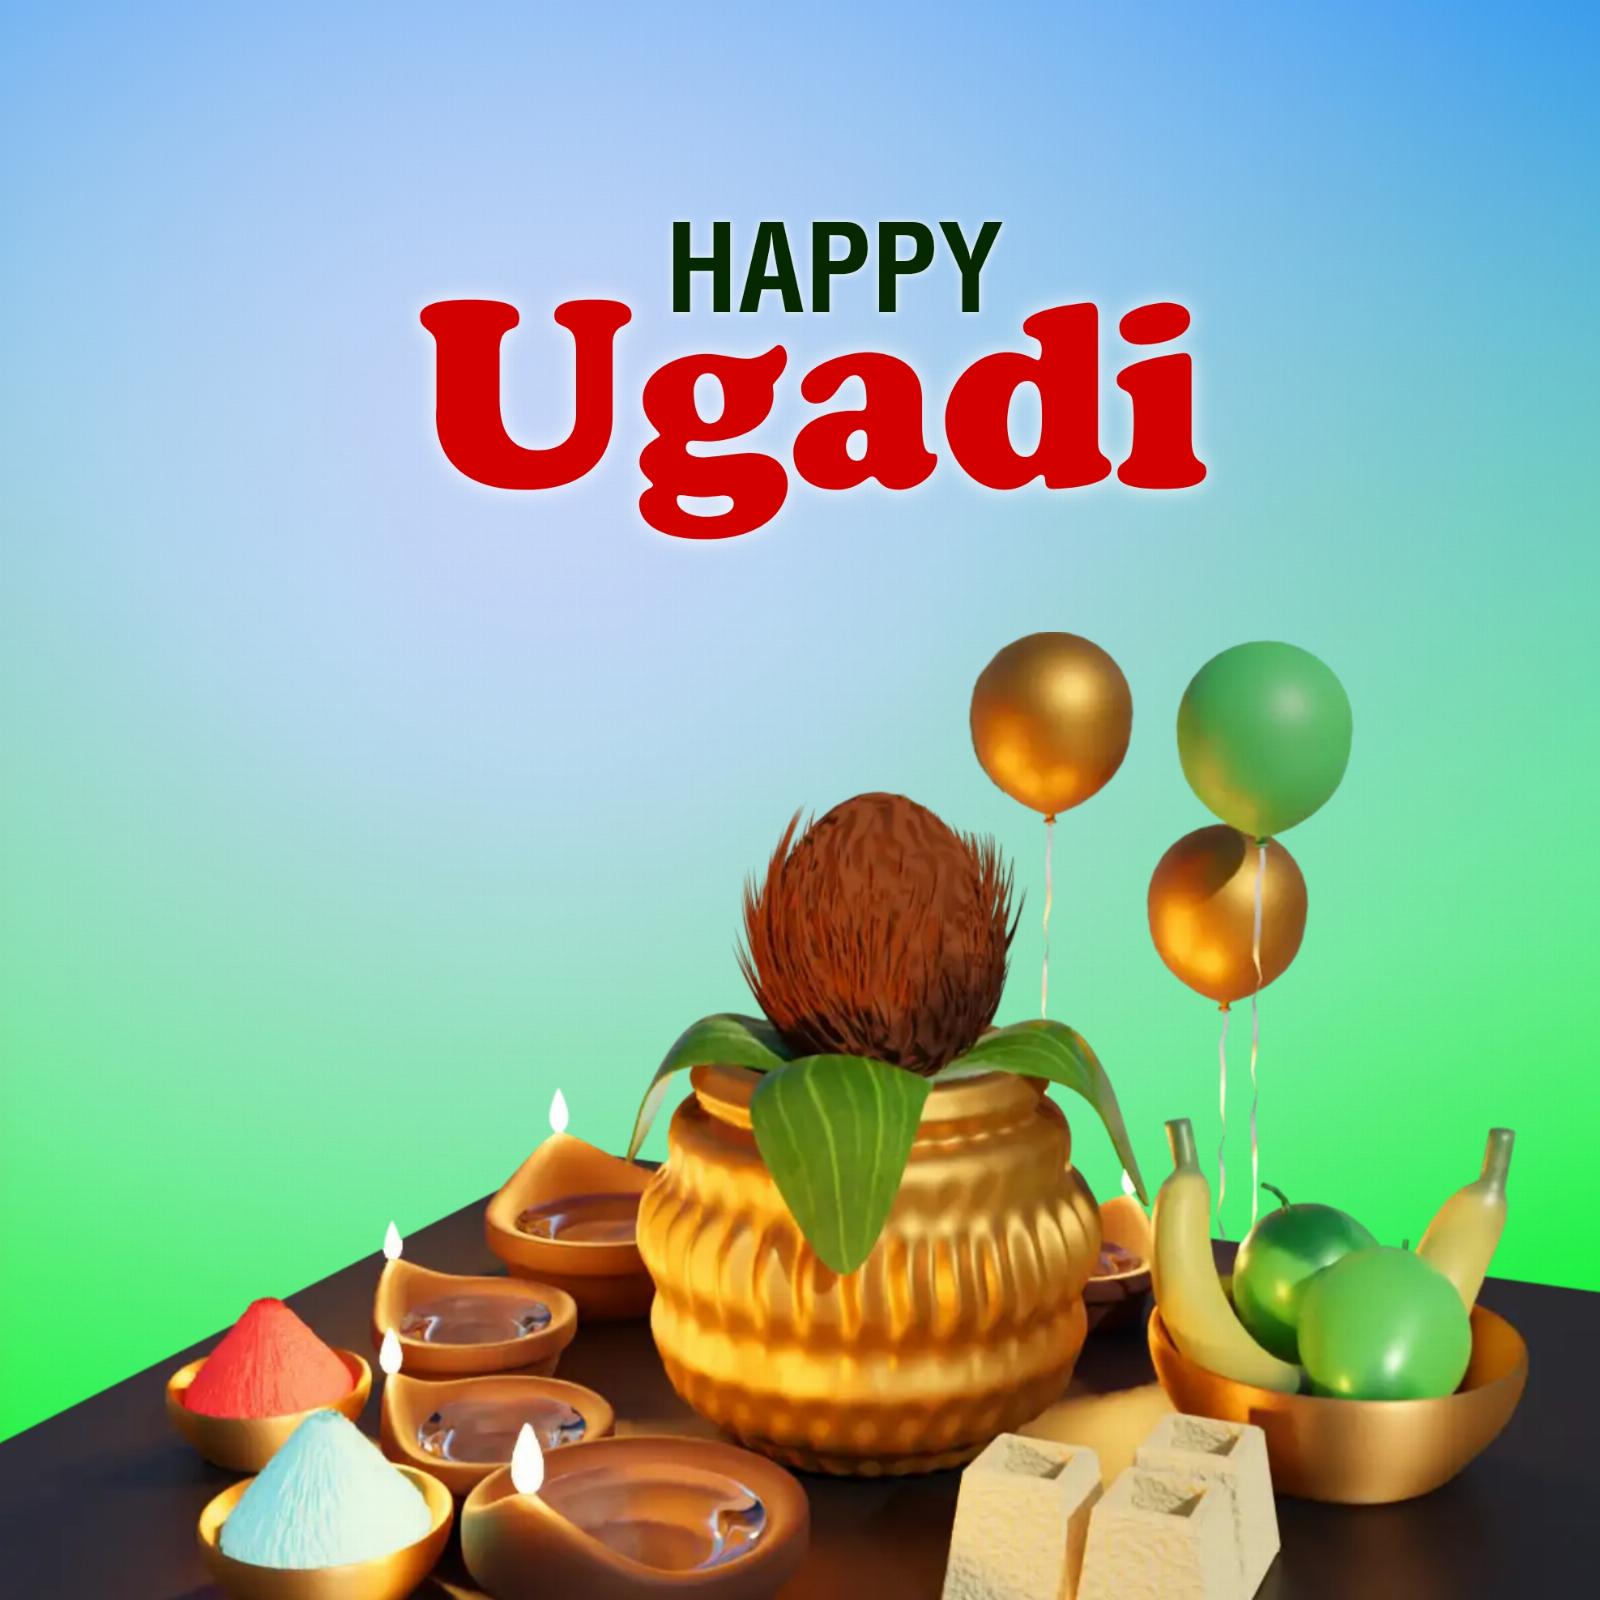 Happy Ugadi Background Images